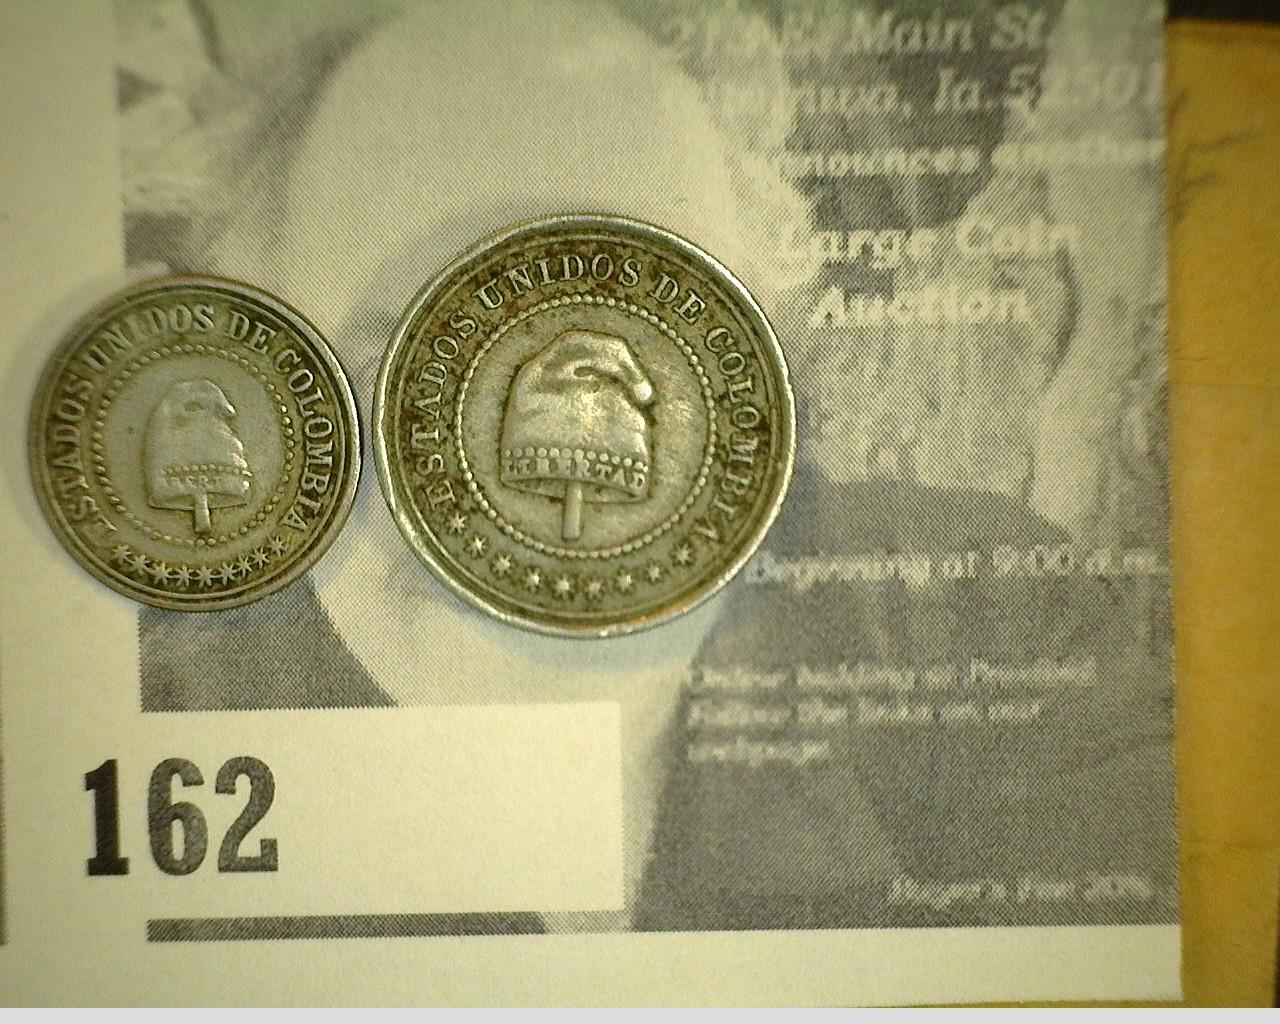 United States of Colombia 1881 coin pair: Dos y medio Centavos & Dos I Medio Centavos.